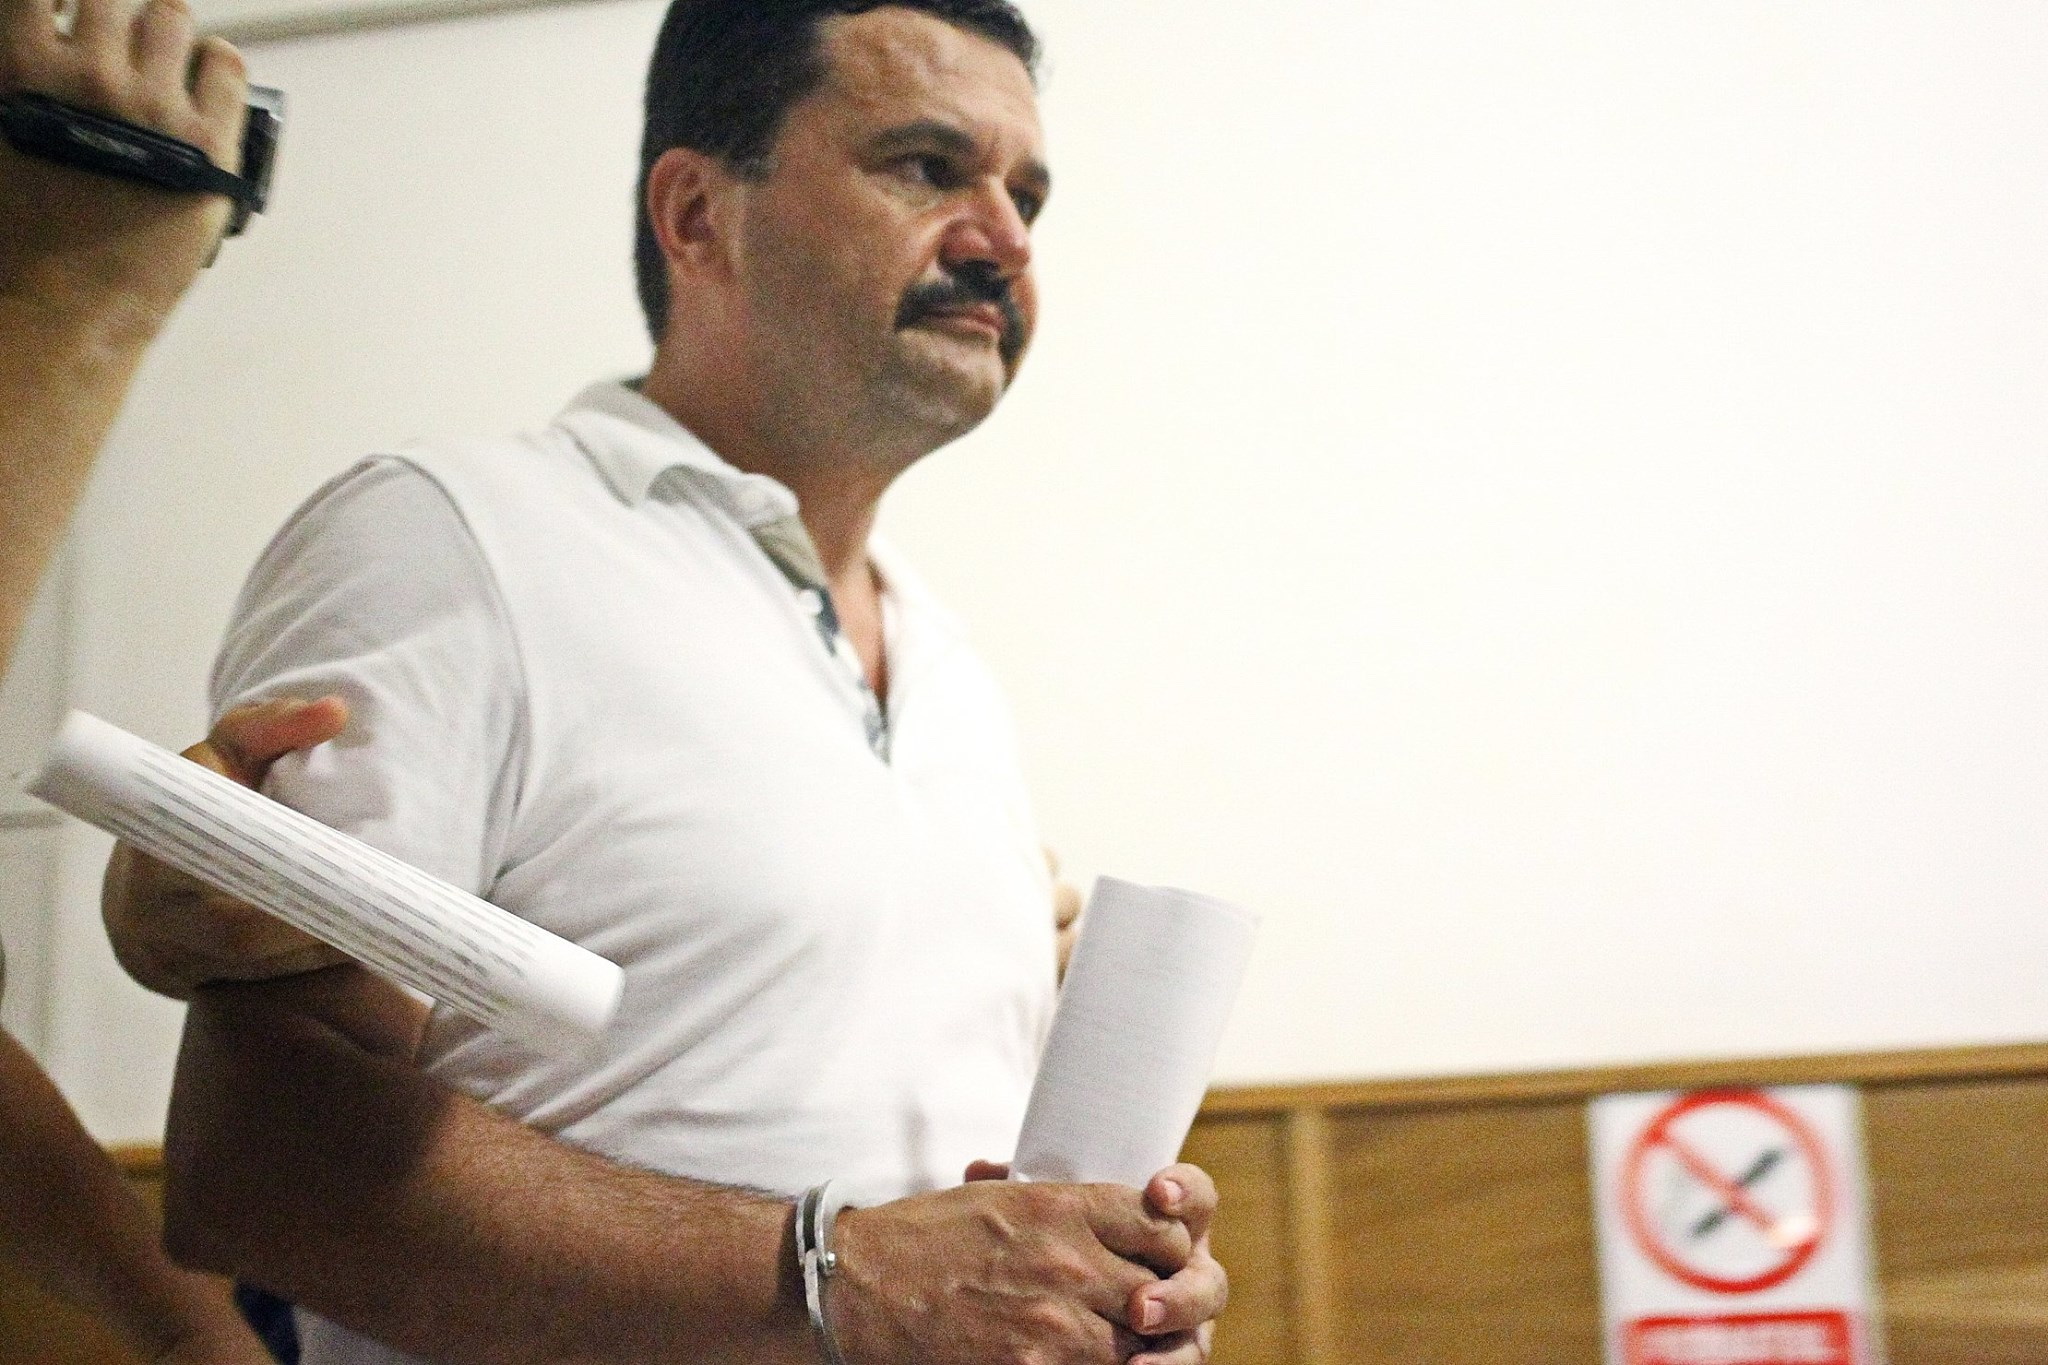 Nicolae Ioţcu, rămâne în arest. Recursul a fost respins


